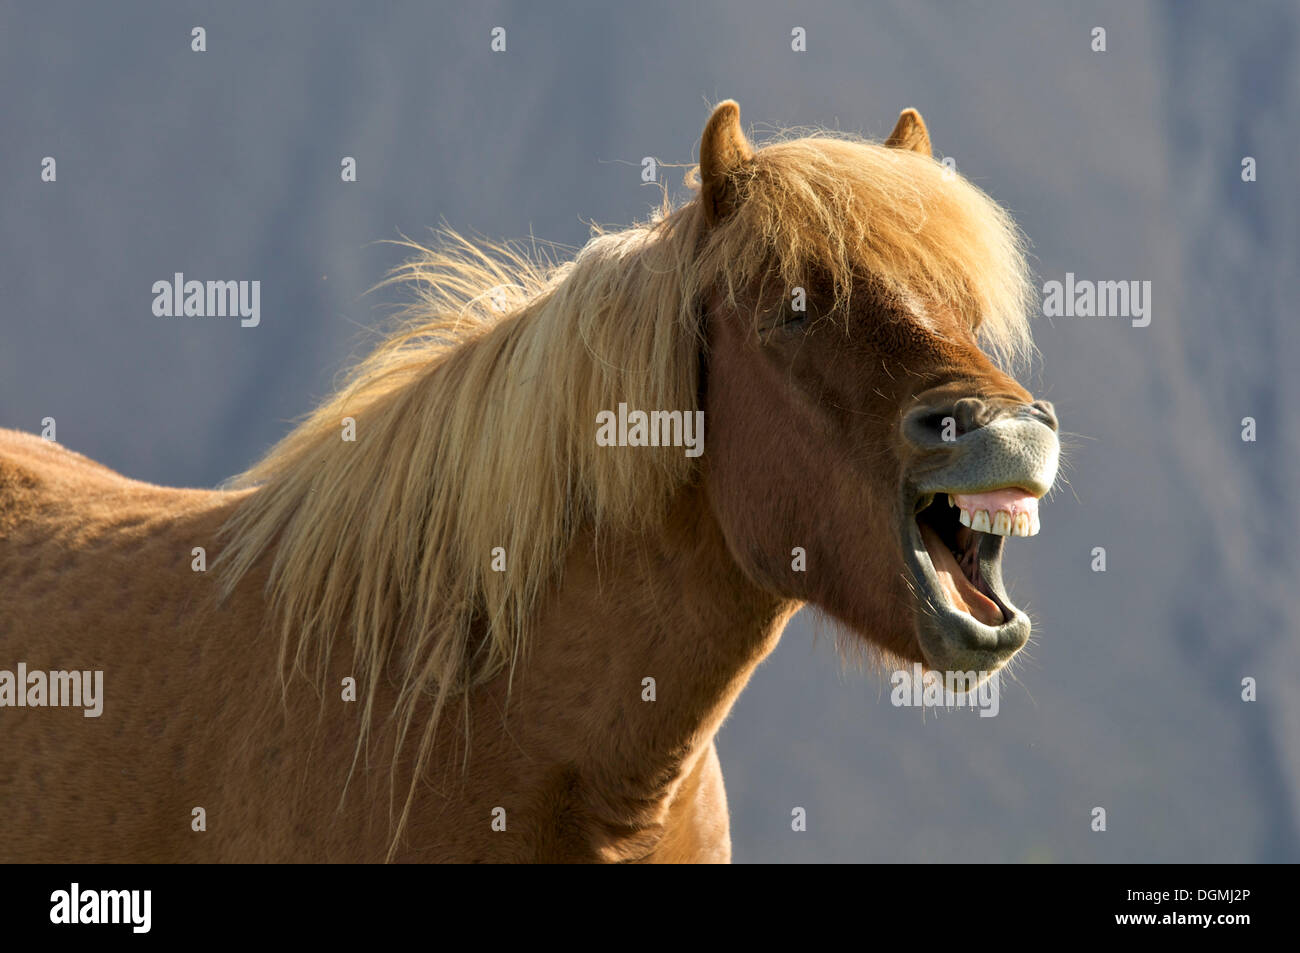 Neighing Iceland horse, Iceland, Europe Stock Photo